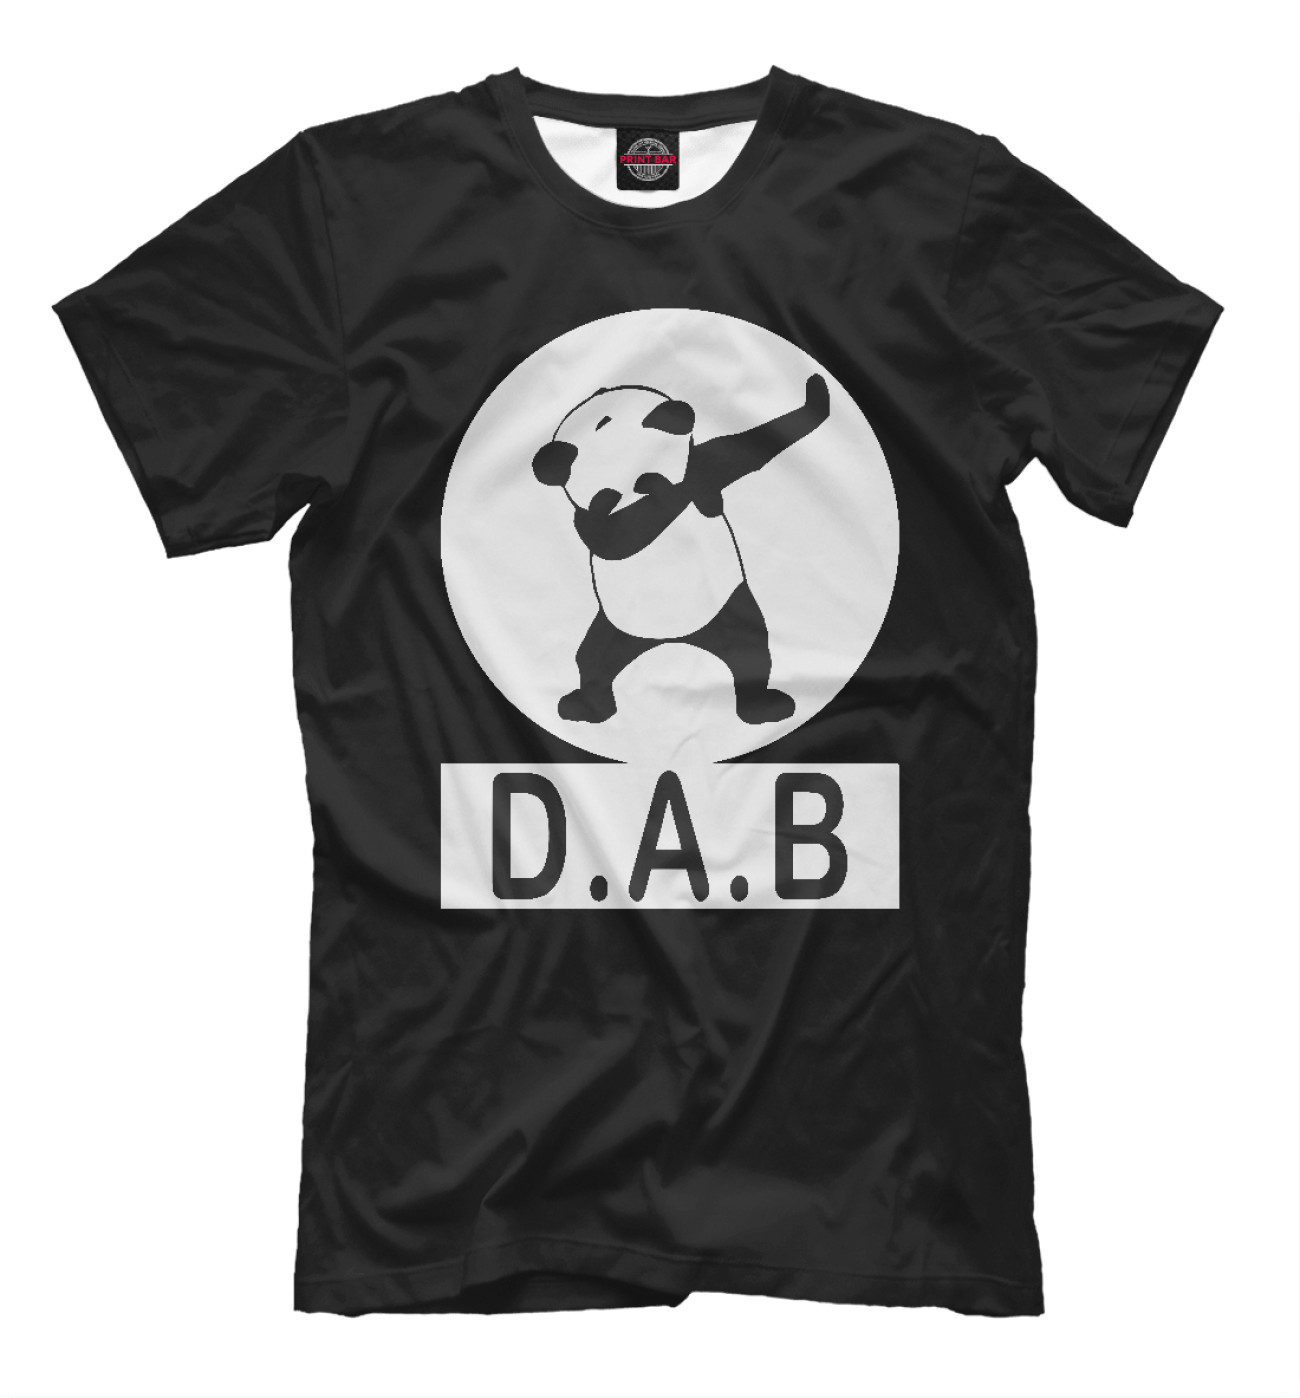 Мужская Футболка DAB Panda, артикул: DAB-616738-fut-2